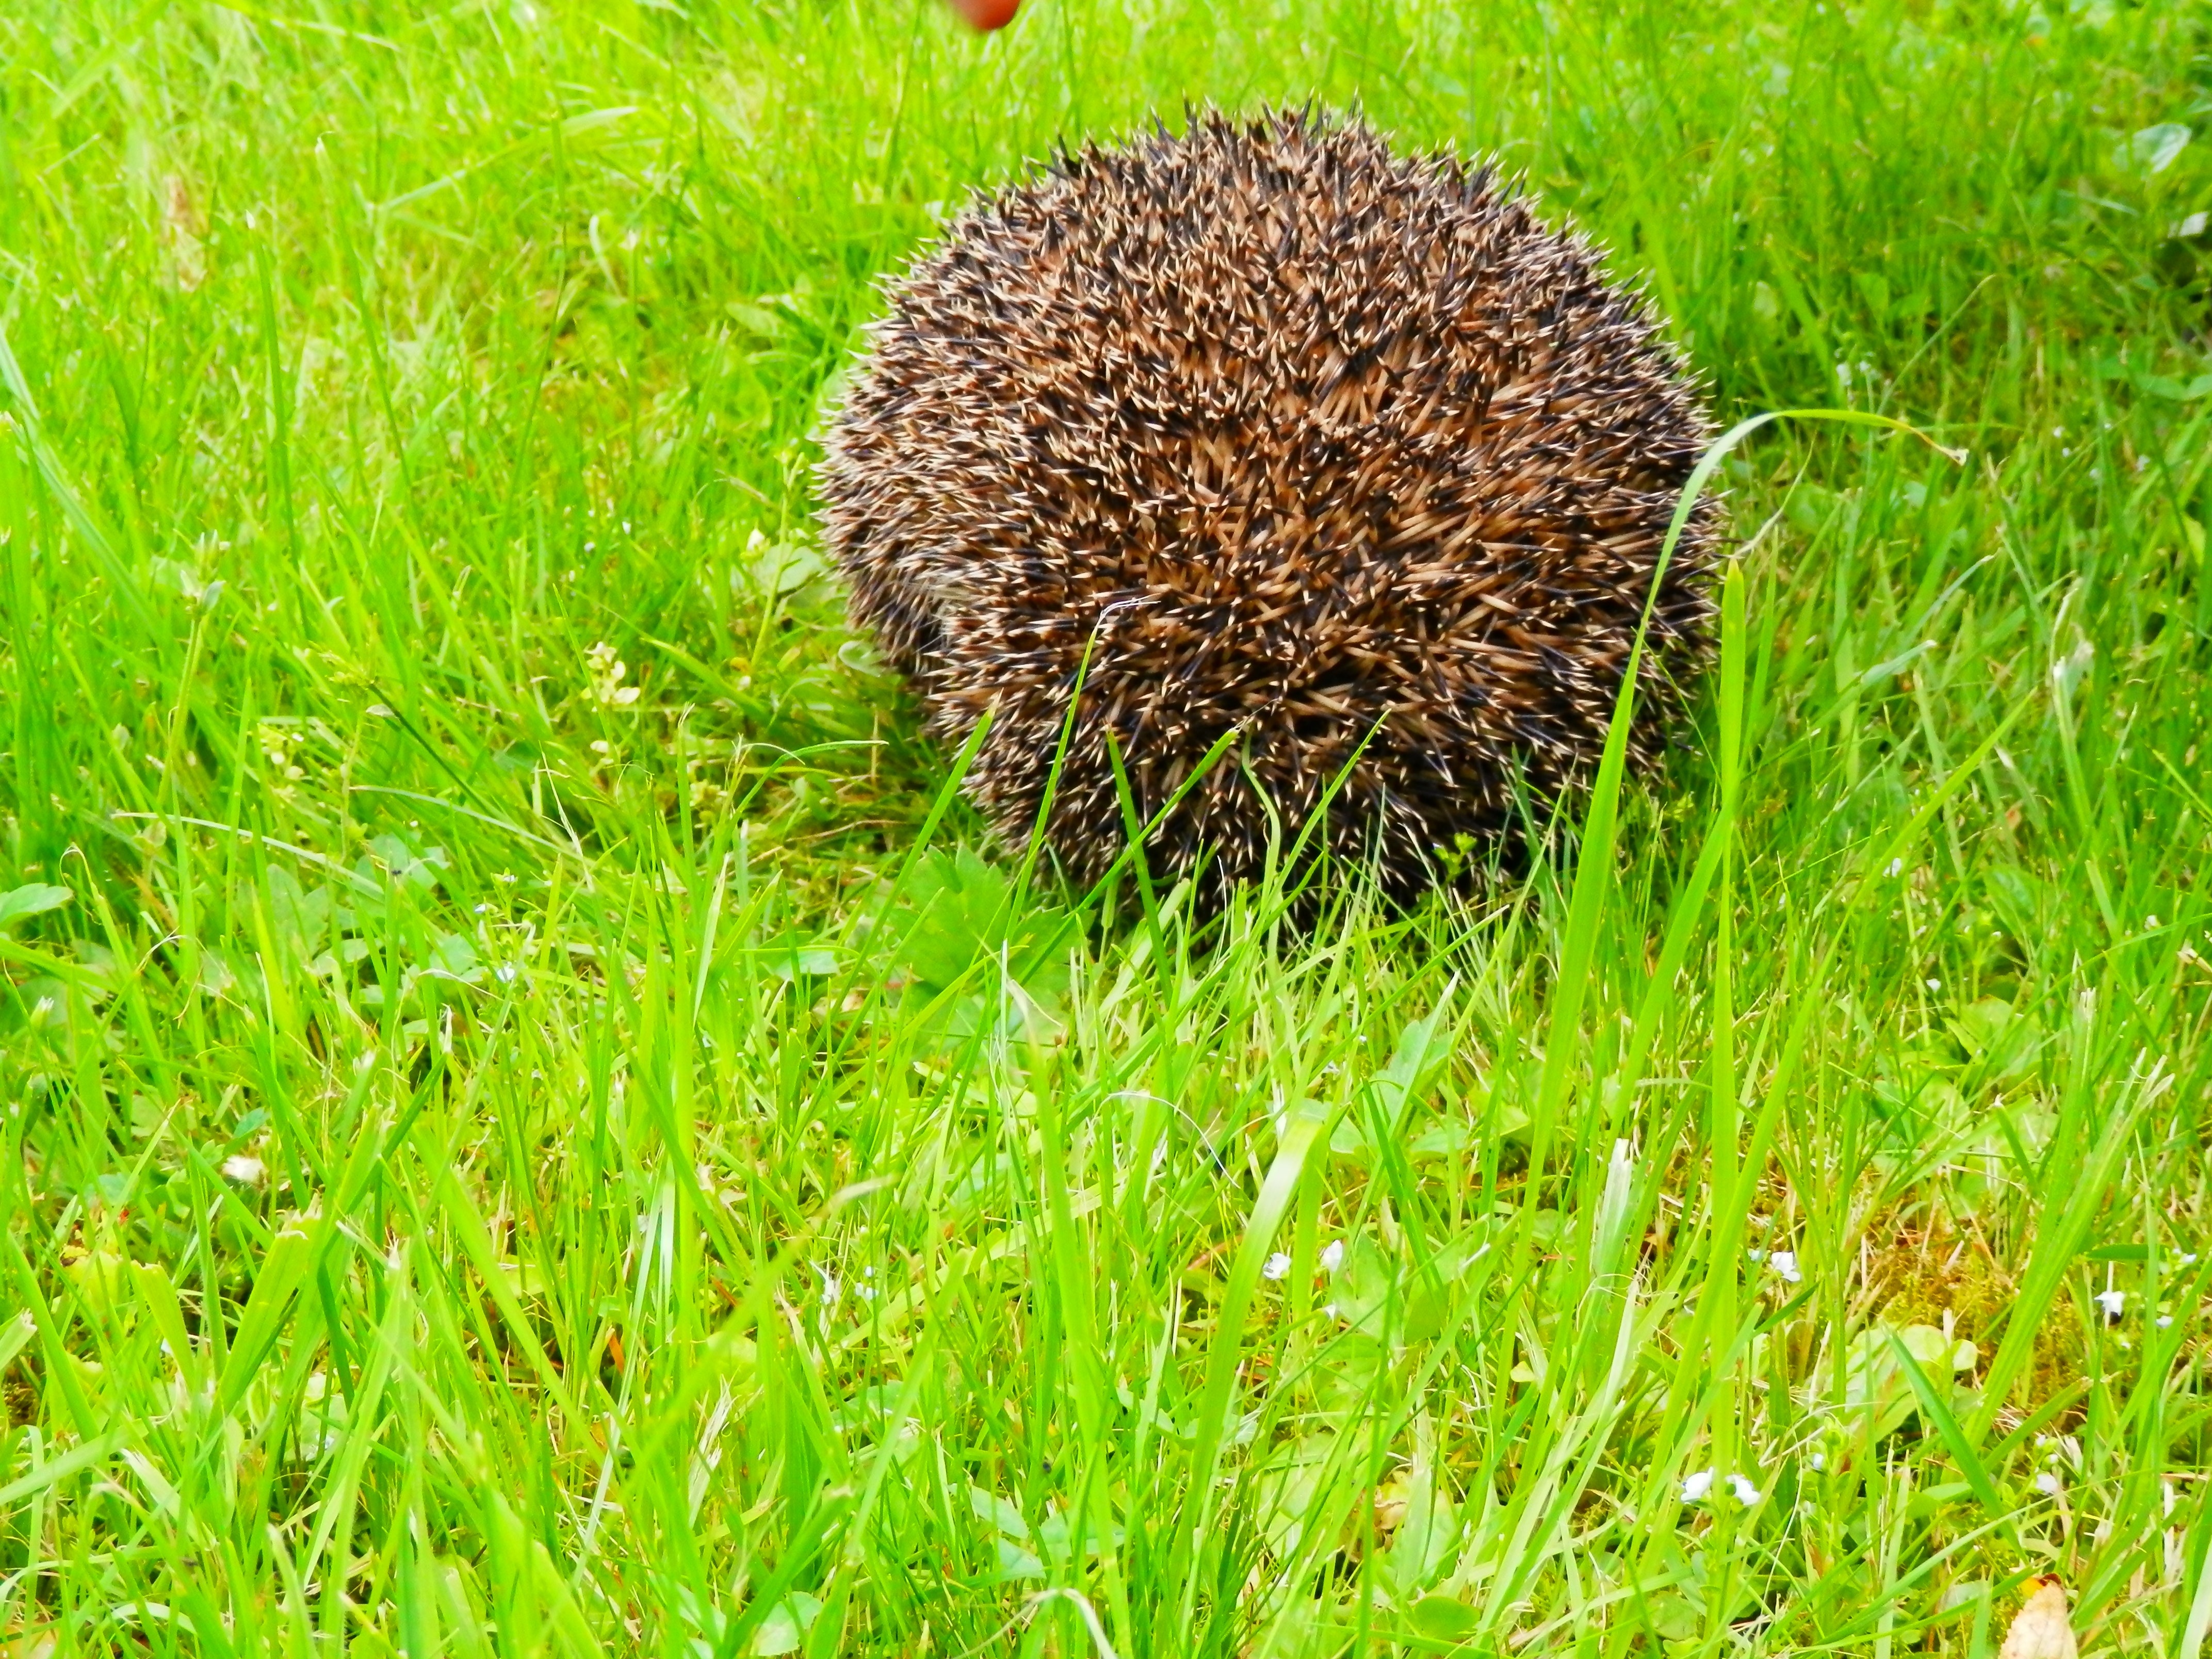 brown hedgehog